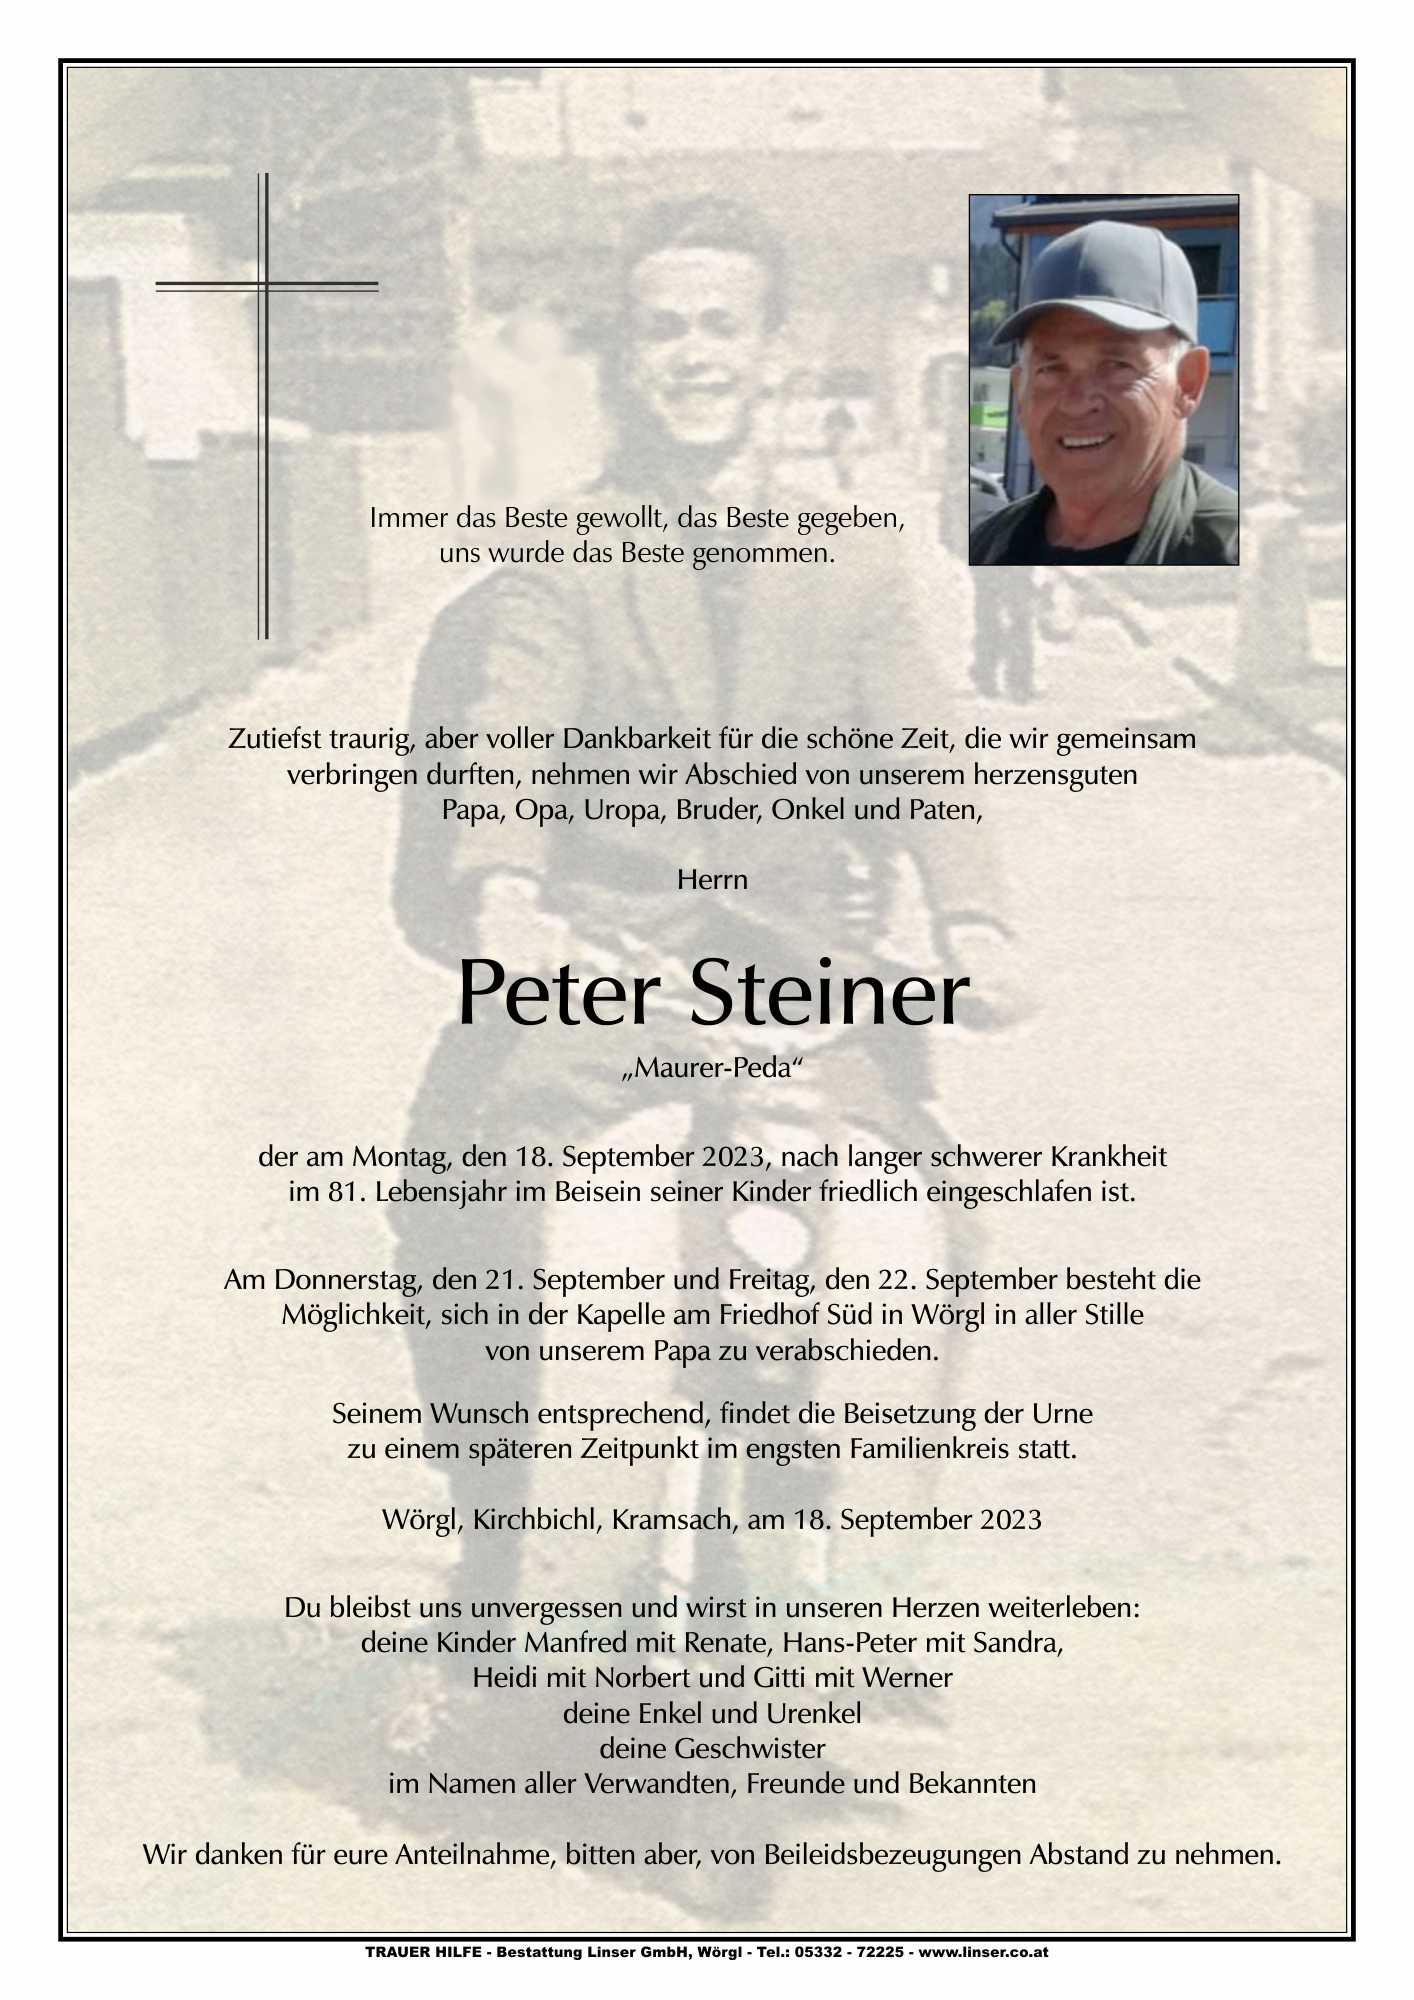 Peter Steiner